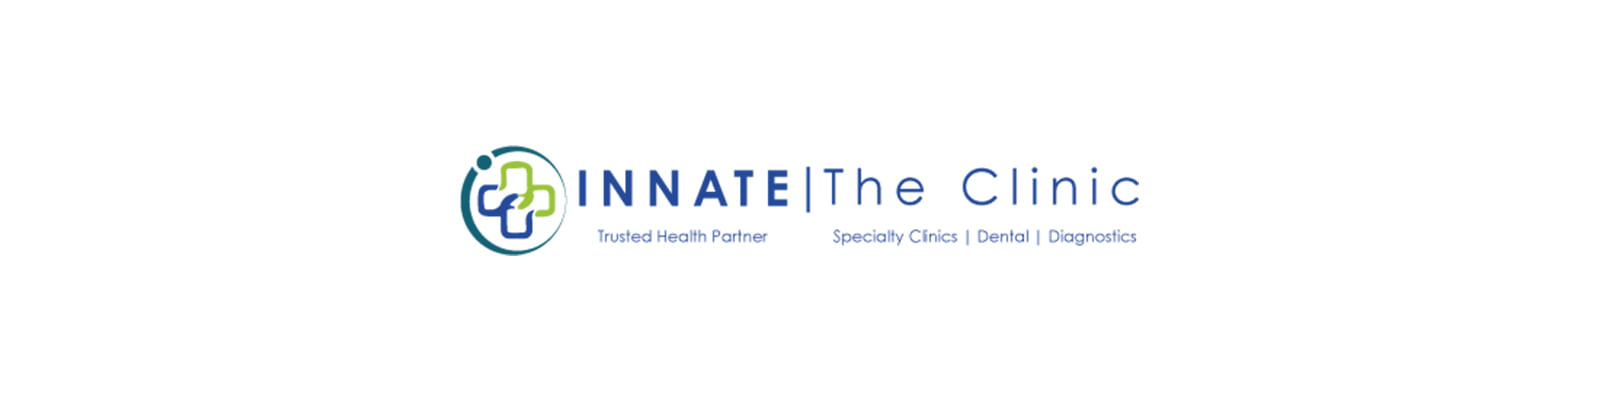 I N N A T E | The Clinic